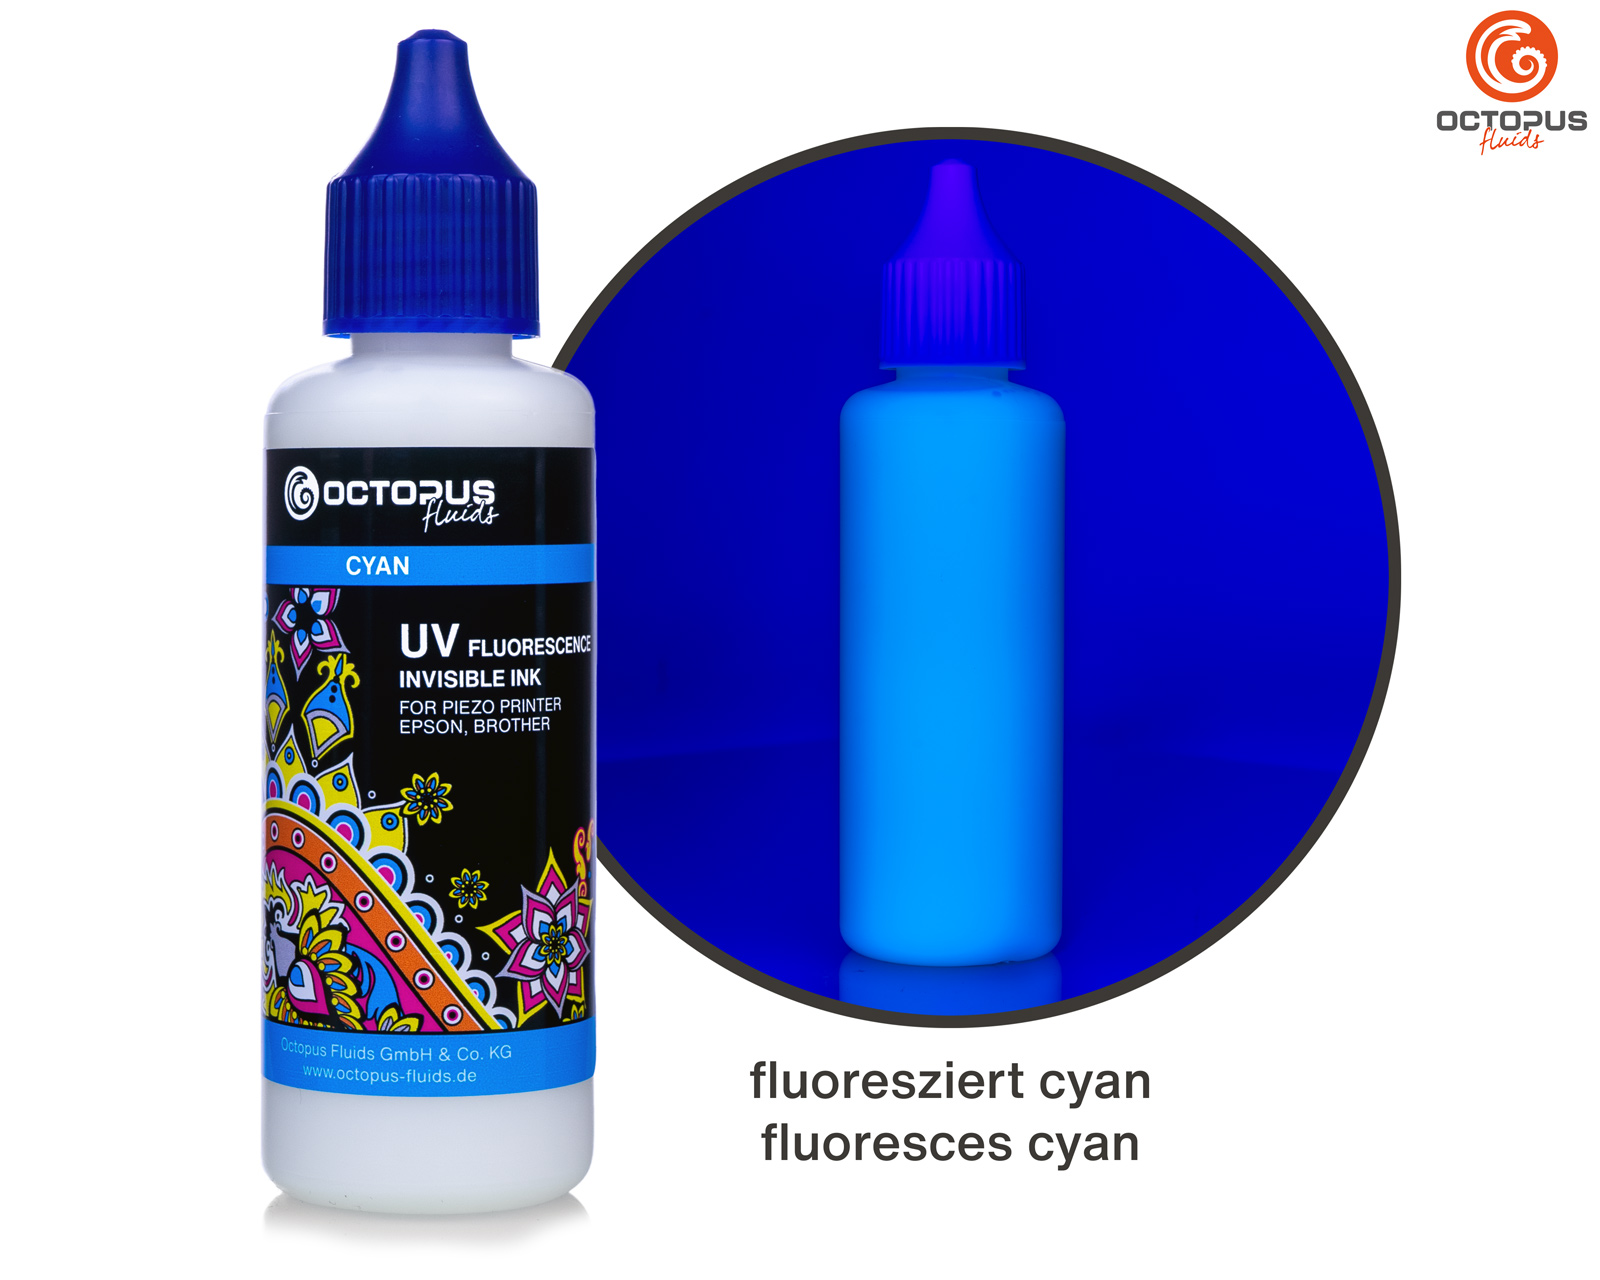 Inchiostro fluorescente UV invisibile per stampanti Piezo Epson e Brother, ciano